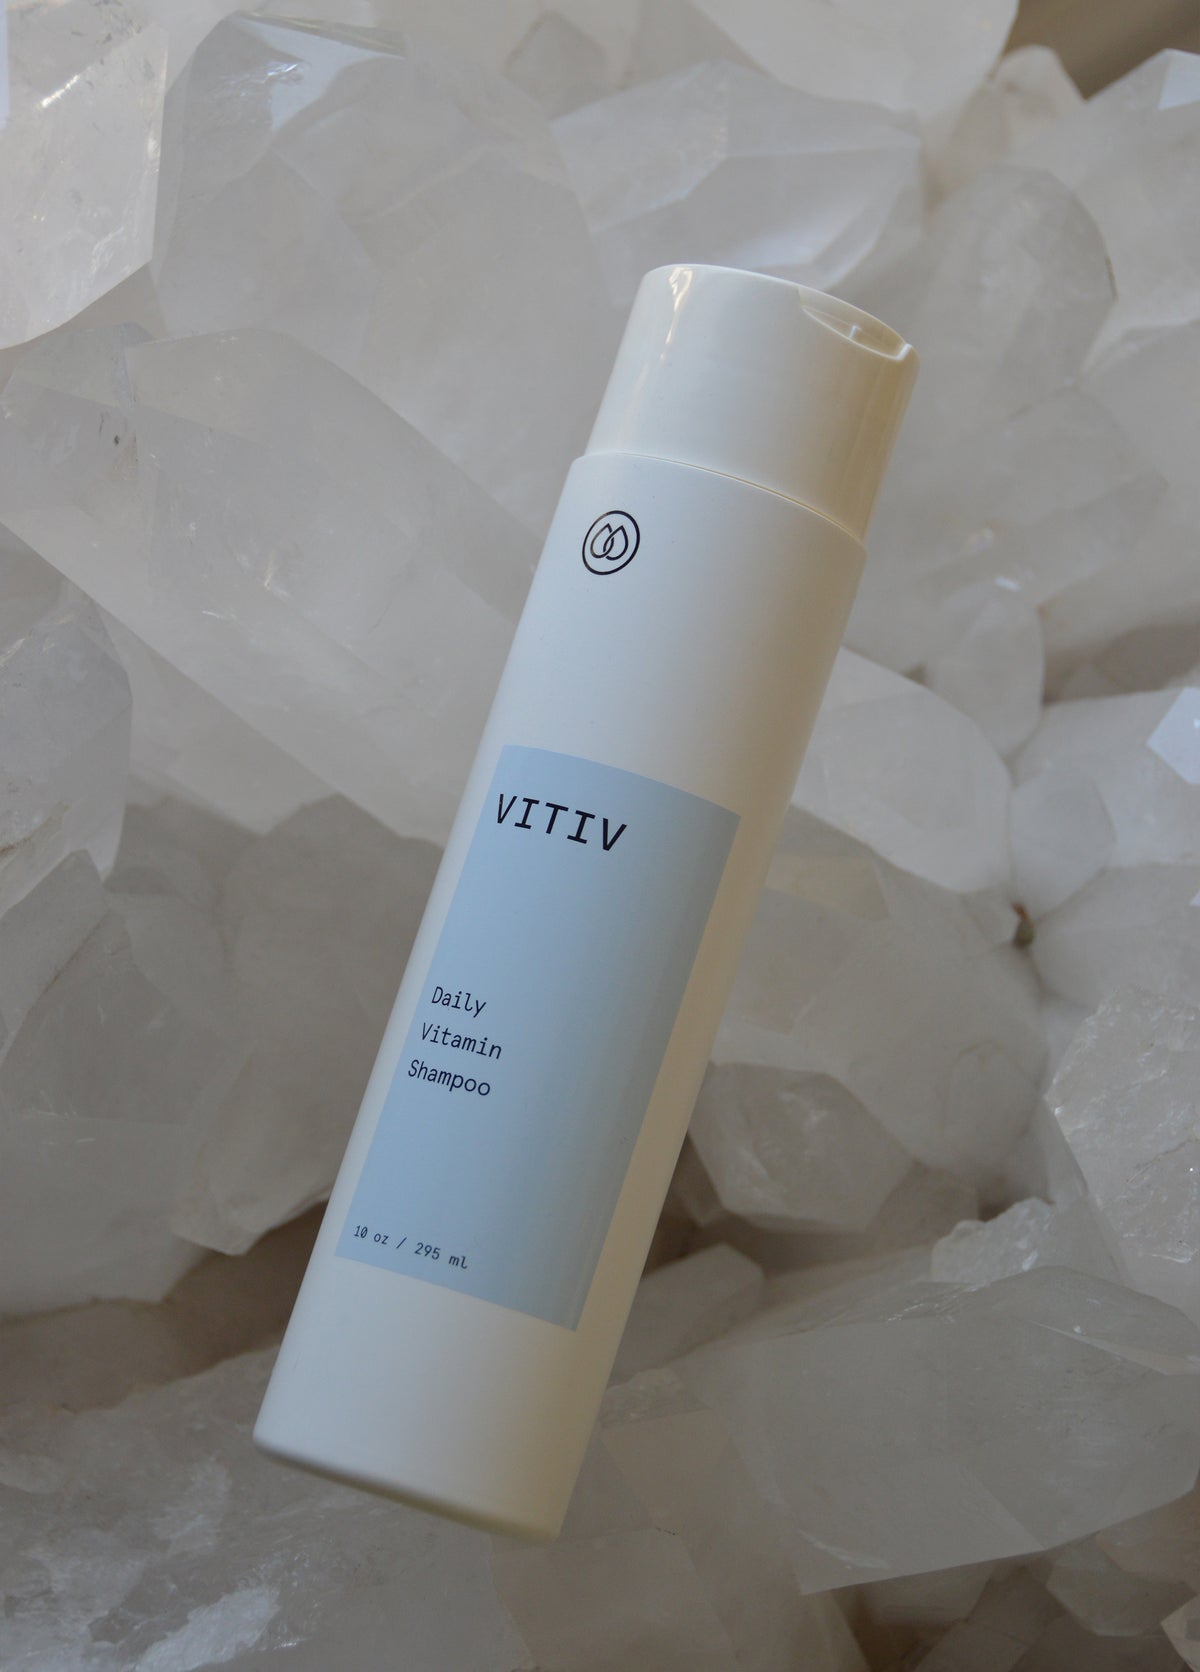 VITIV Daily Vitamin Shampoo